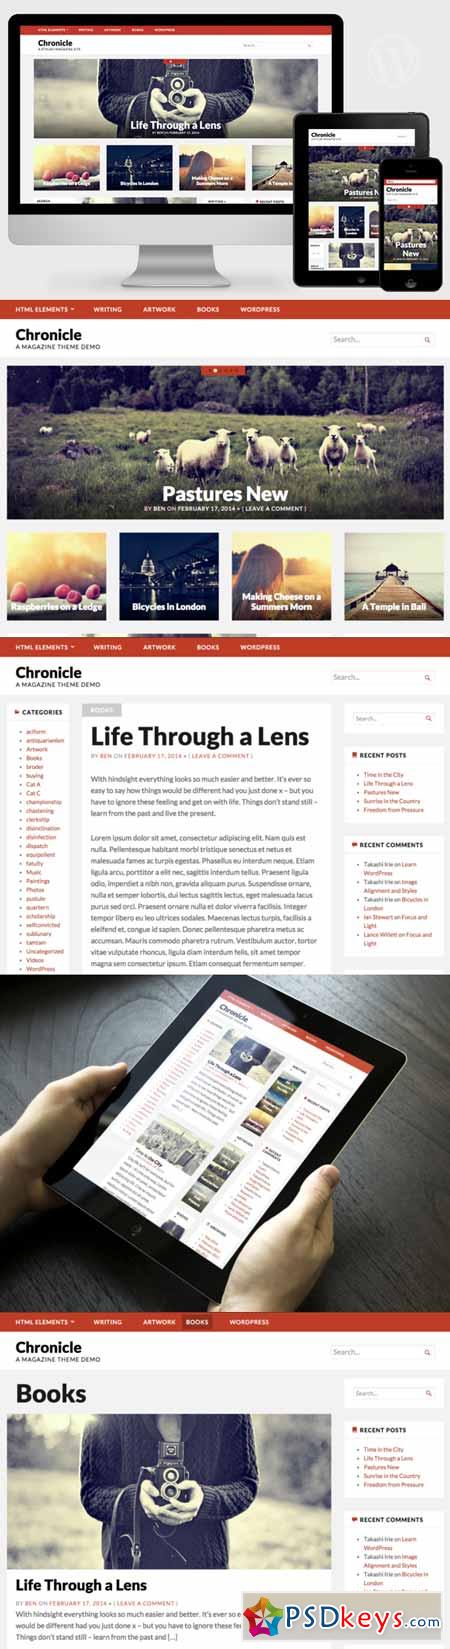 Chronicle - Magazine Theme 113017